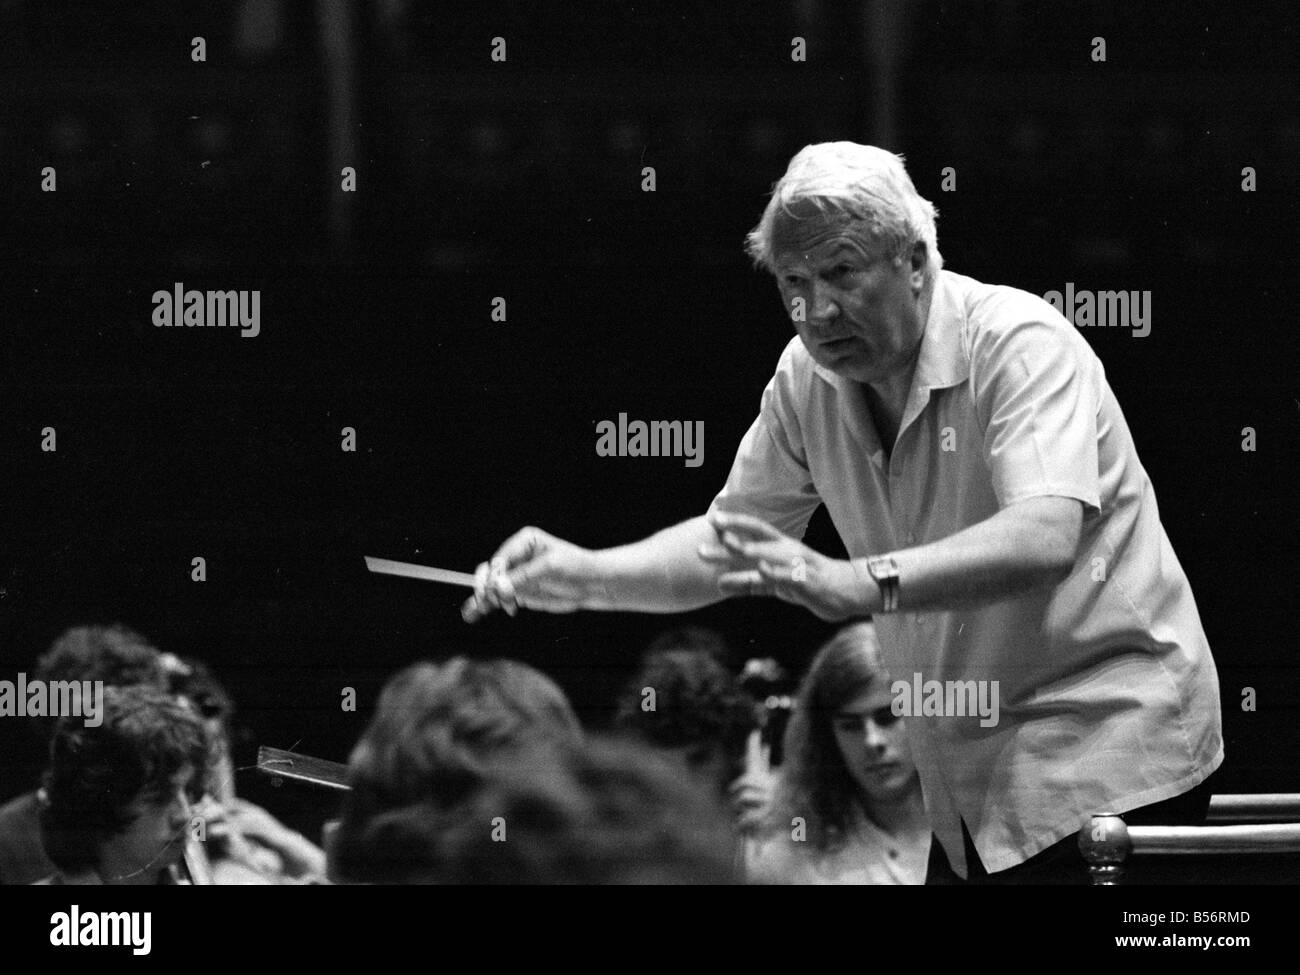 107 Edward Heath à répéter avec l'Orchestre des jeunes de la Communauté européenne forte au Royal Albert Hall. M. Heath est président de l'orchestre.;Août 1978;78-3974-002 Banque D'Images